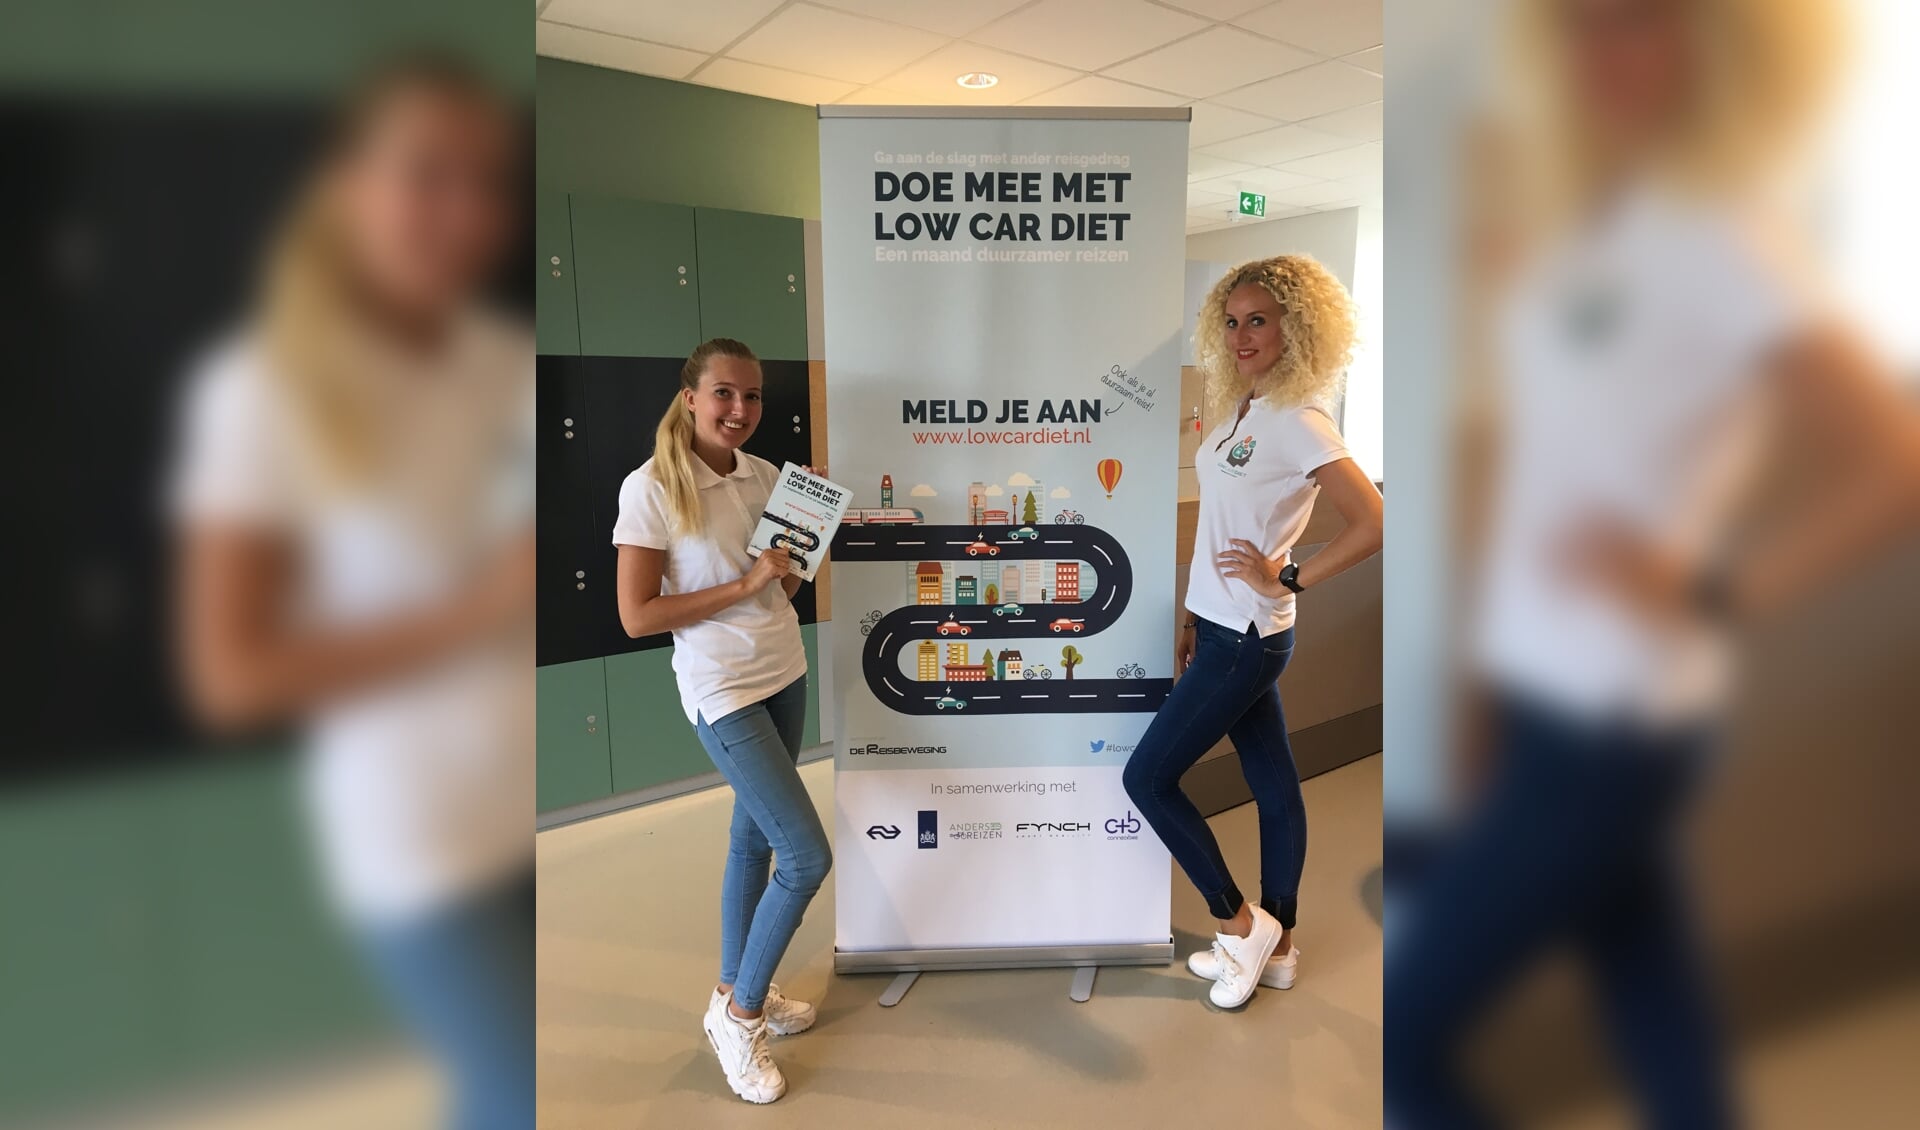 Onlangs was het promotieteam van Low Car Diet in het gemeentehuis van Veghel om medewerkers uitleg te geven en te enthousiasmeren tot inschrijving.